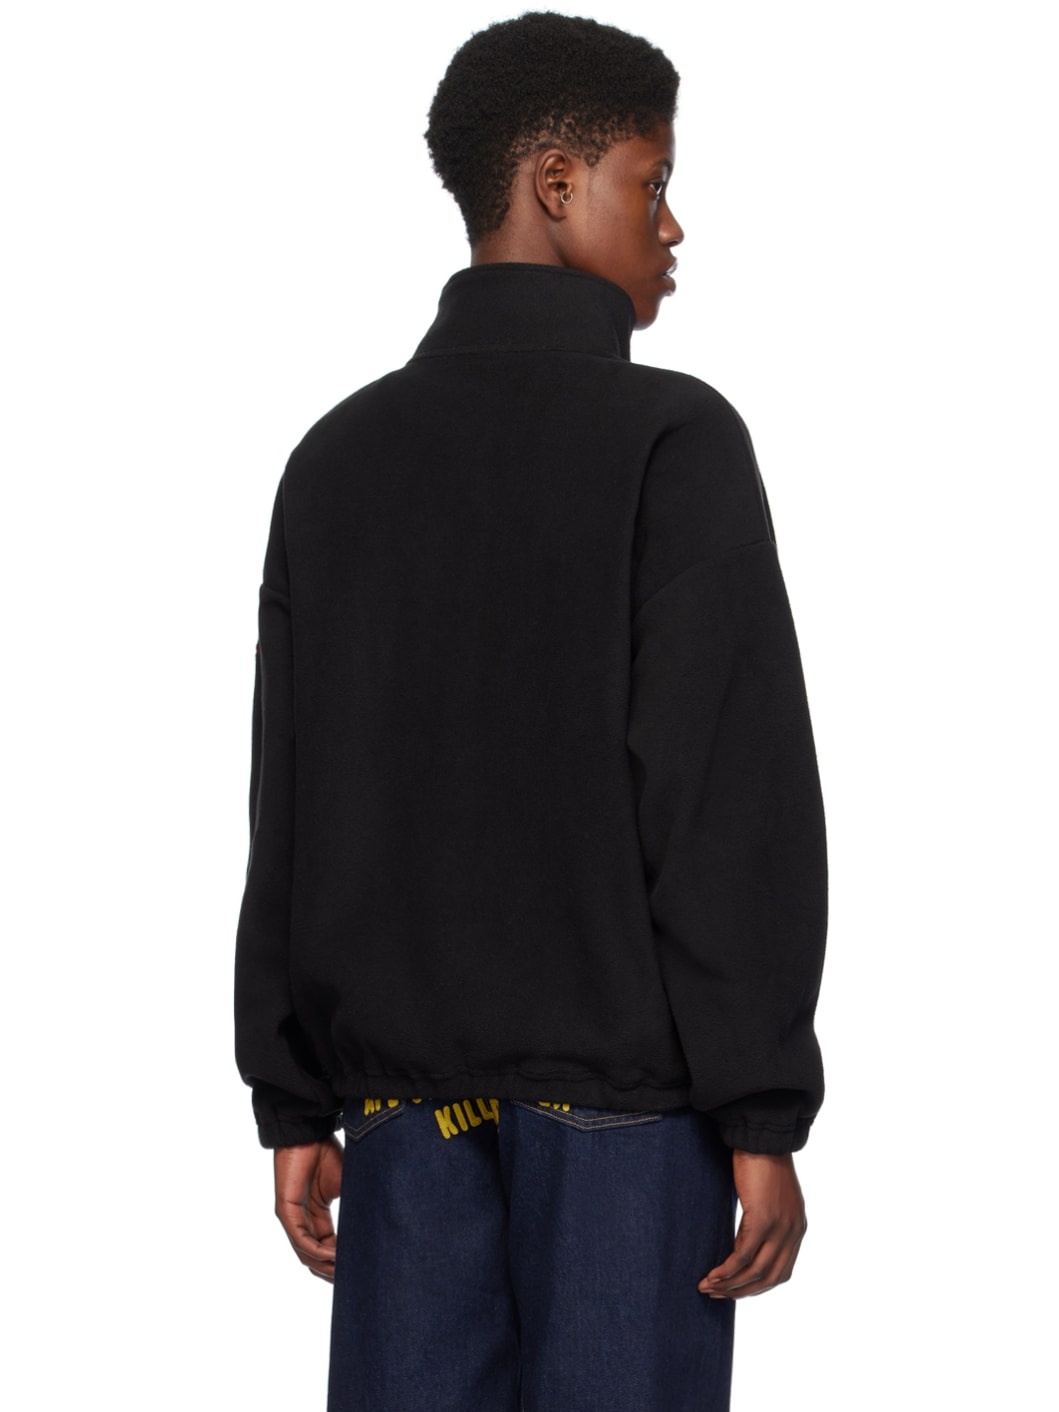 Black Zip-Up Sweatshirt - 3